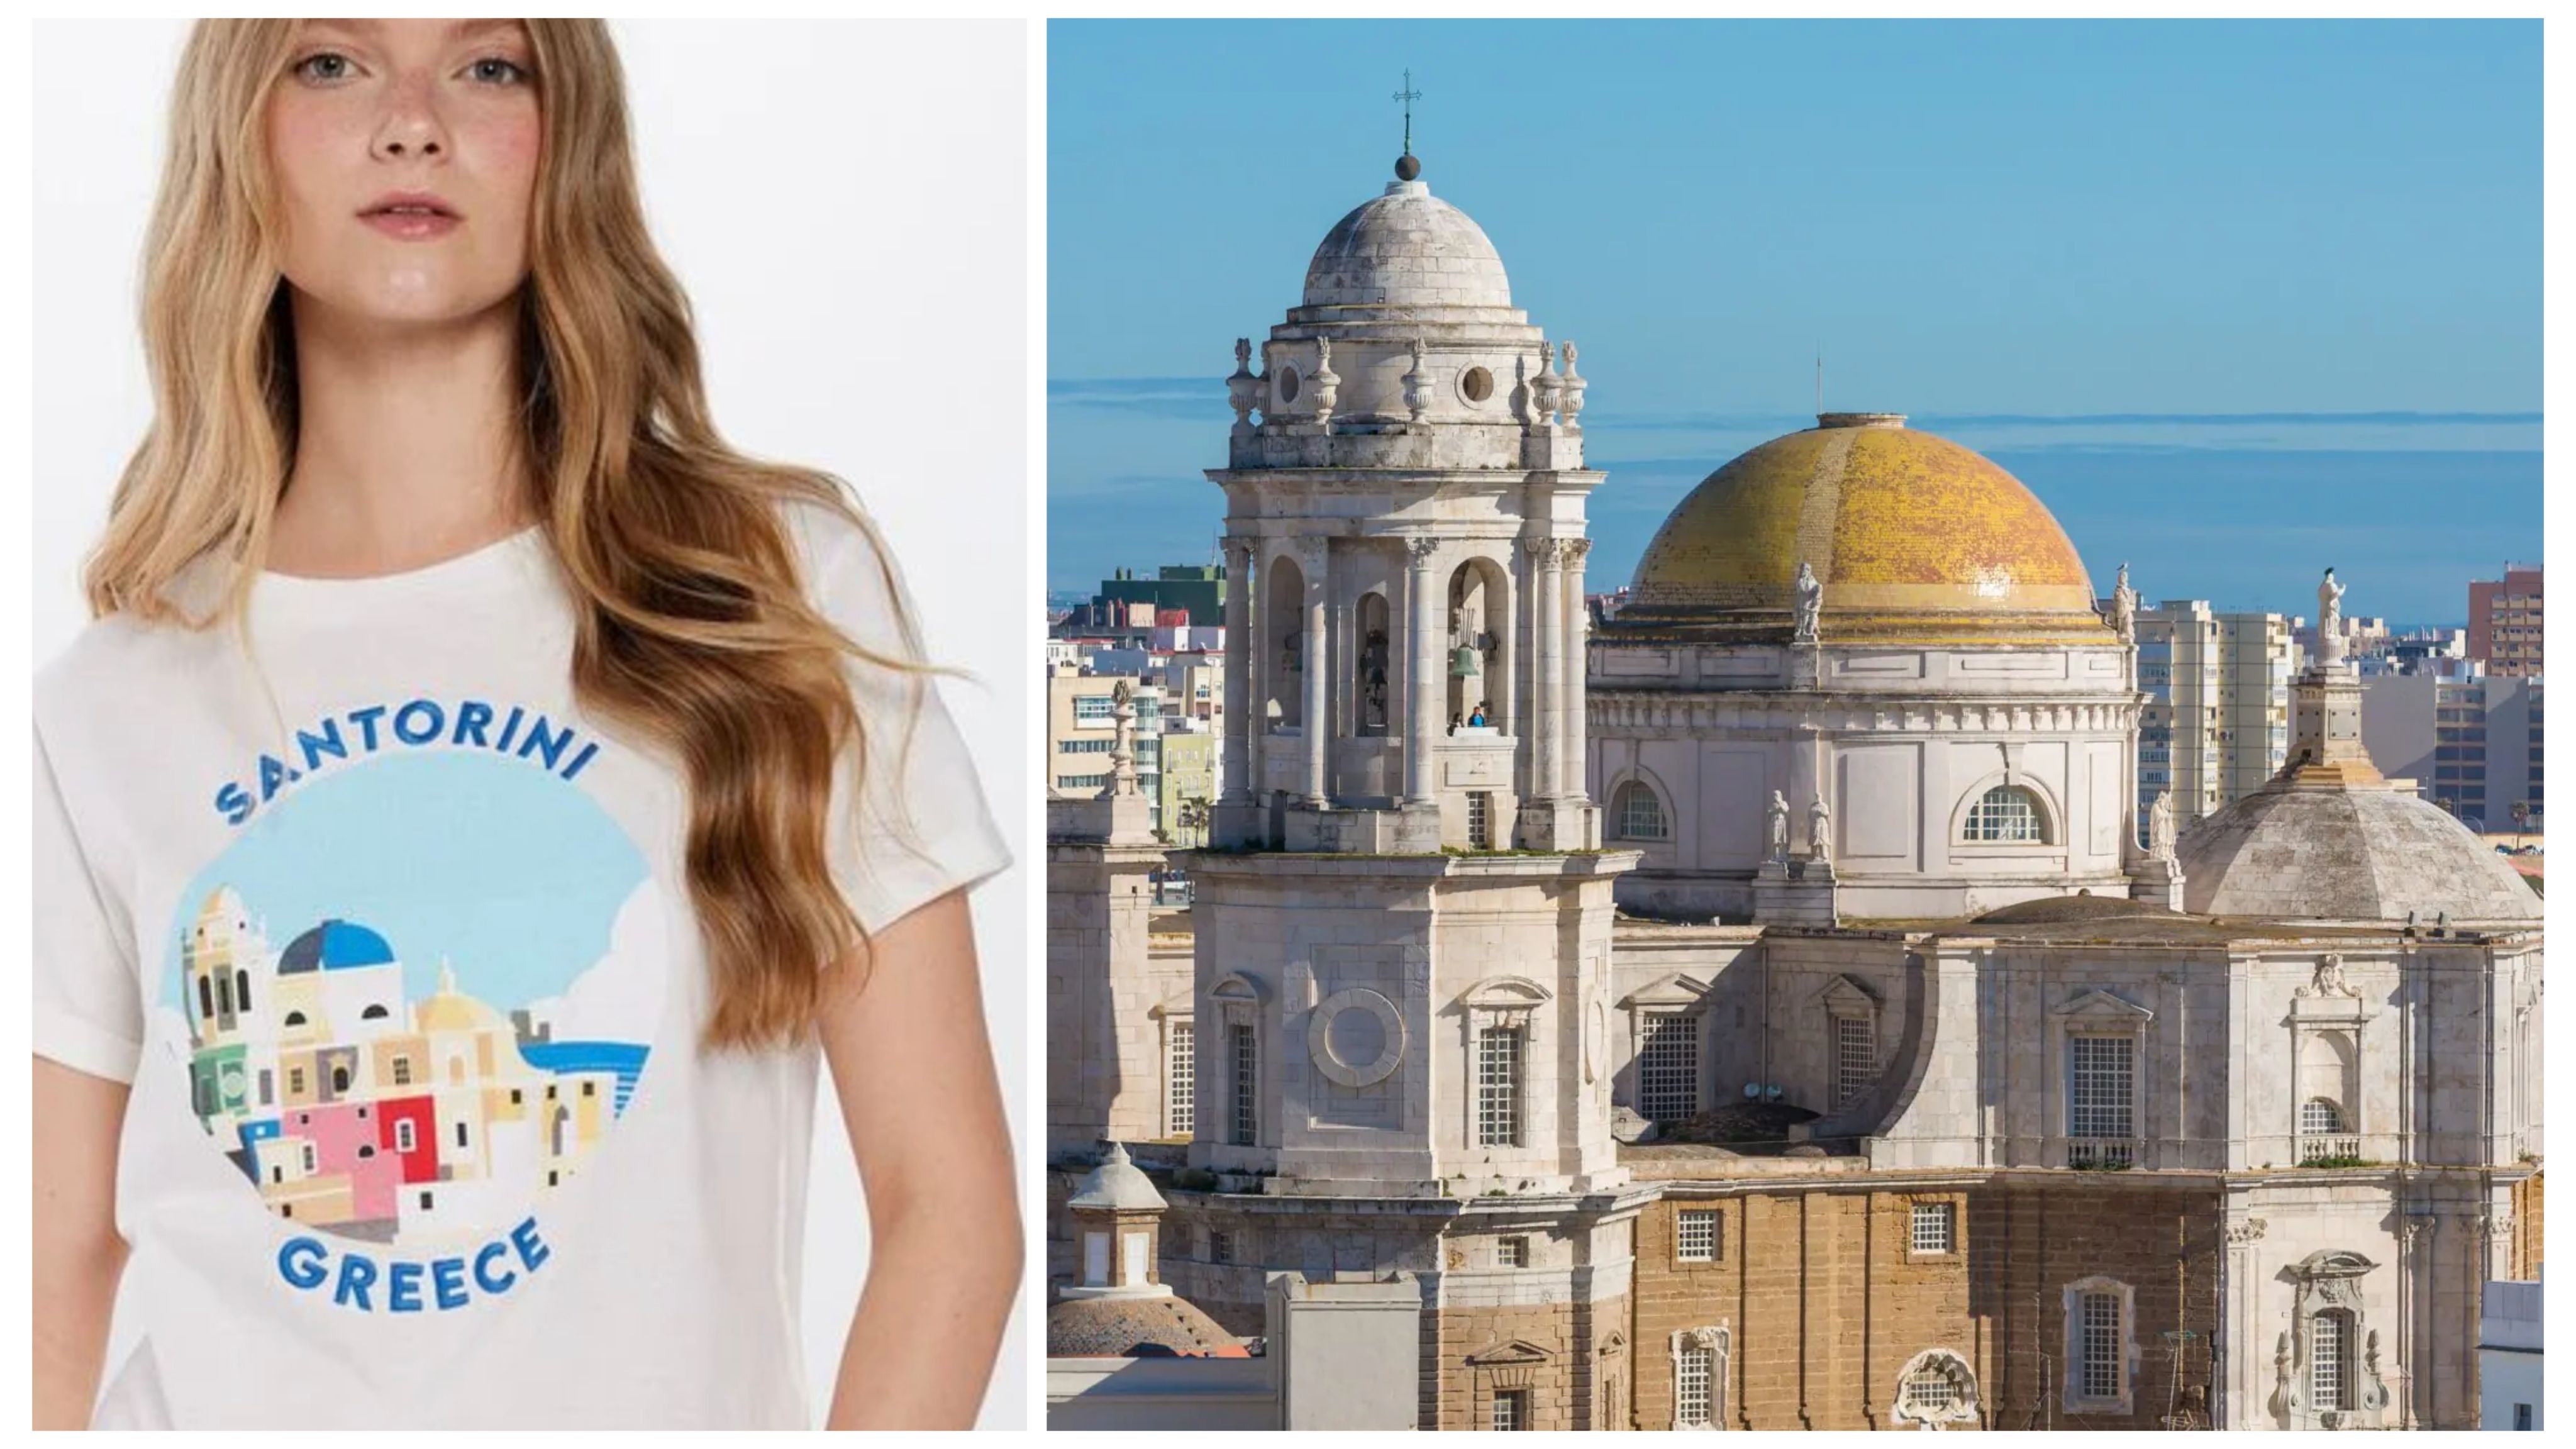 La camiseta de la marca Springfield, que confunde Santorini con Cádiz.